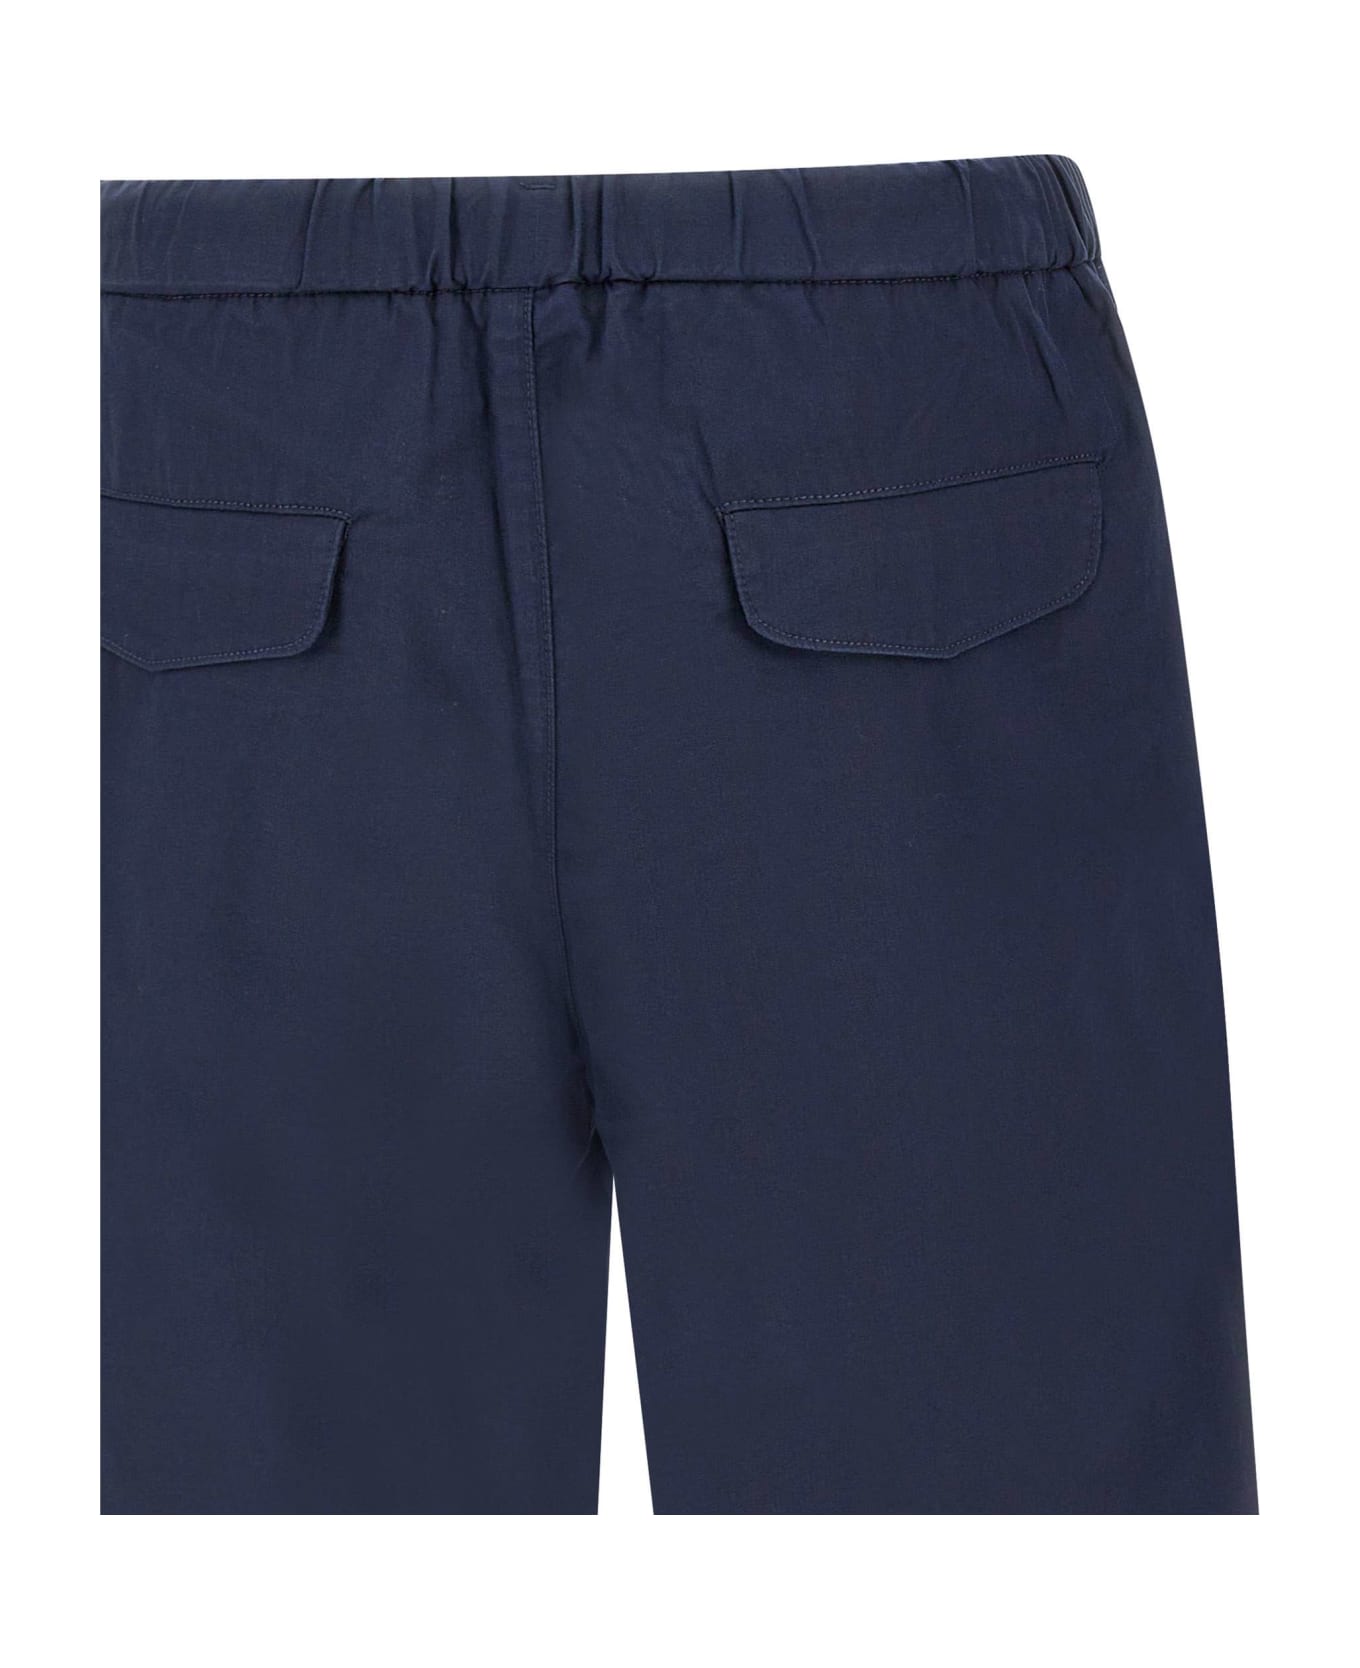 Sun 68 Shorts In Cotton - NAVY